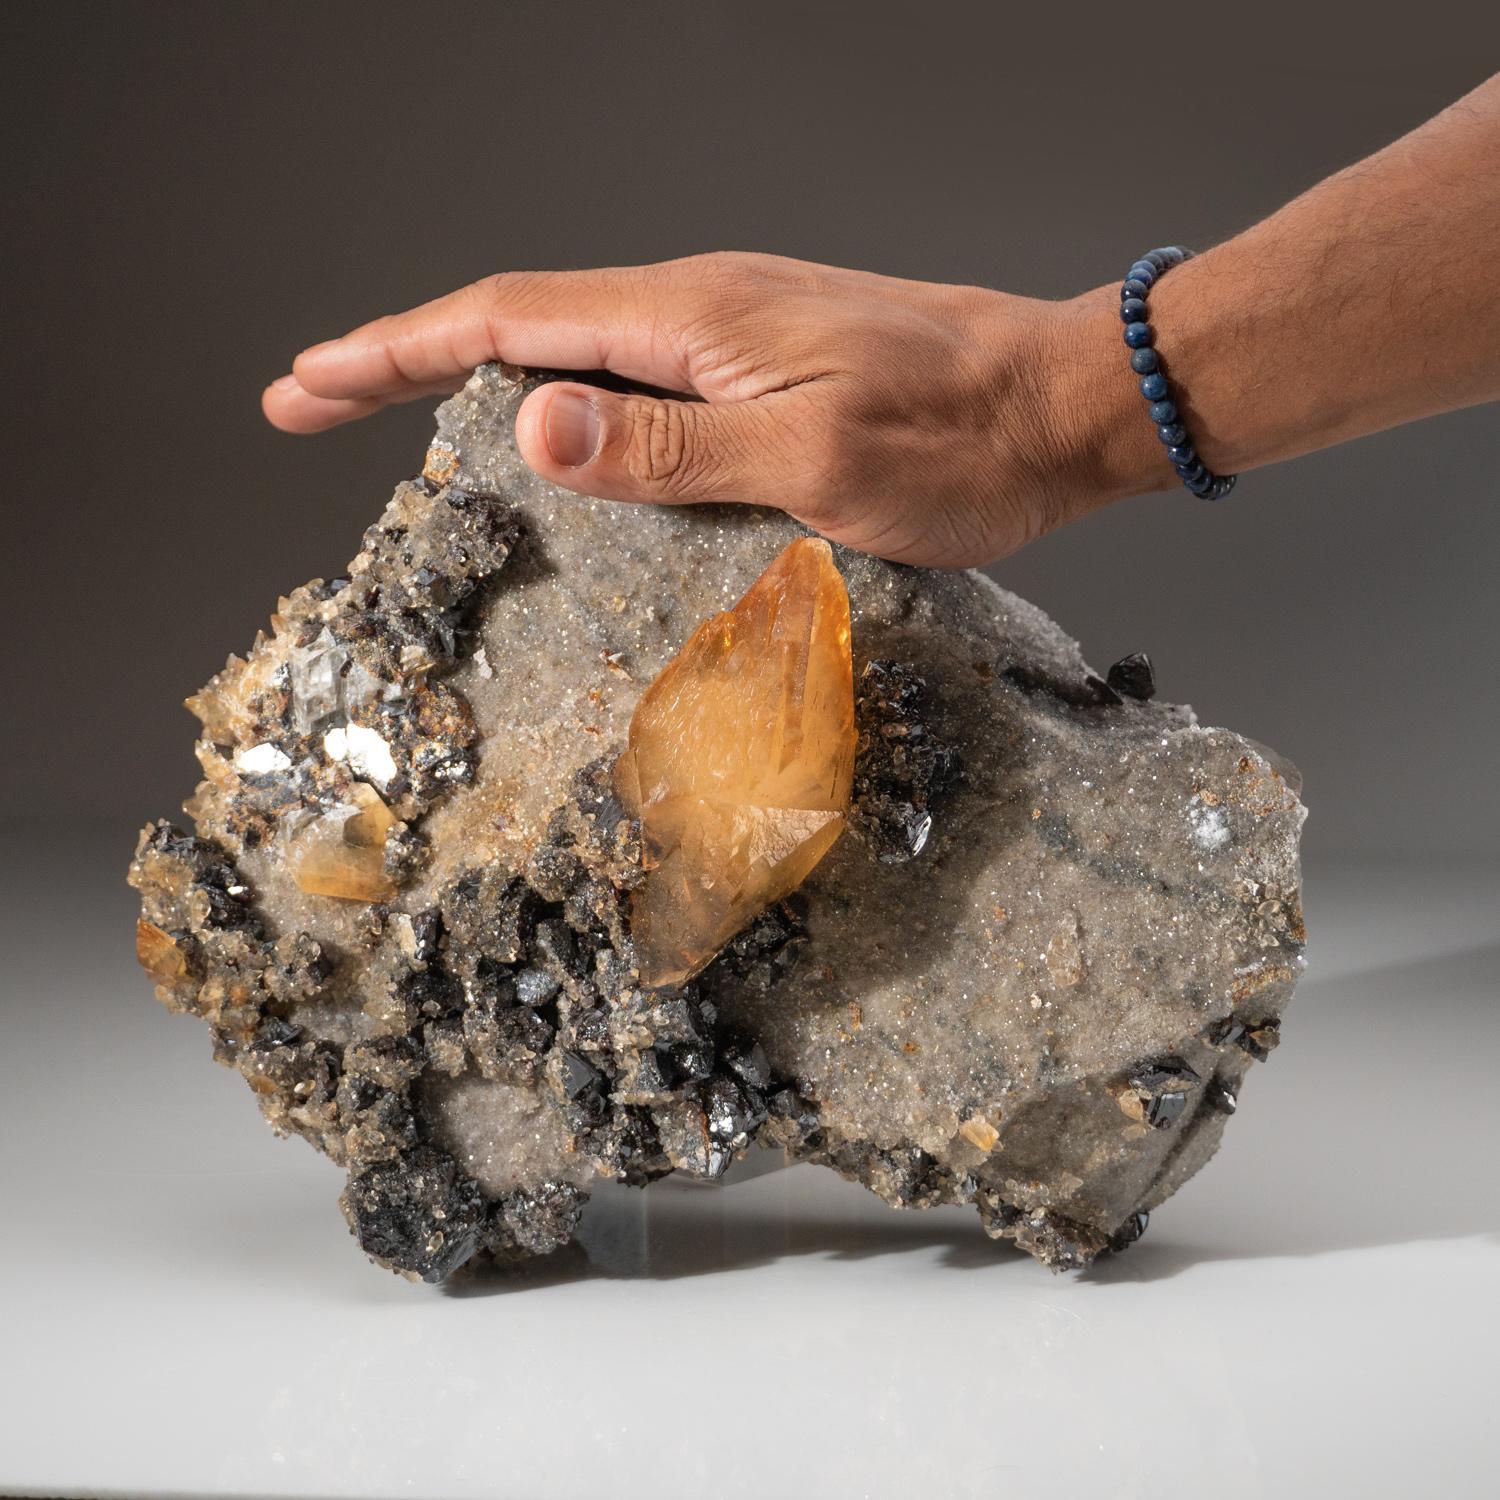 De la mine Elmwood, Carthage, Tennessee

Grand amas esthétique de cristaux de sphalérite noire très lustrée sur une matrice recouverte de quartz avec des micro cristaux de calcite dorée. Grande grappe de 360 degrés avec un éclat métallique. Sans